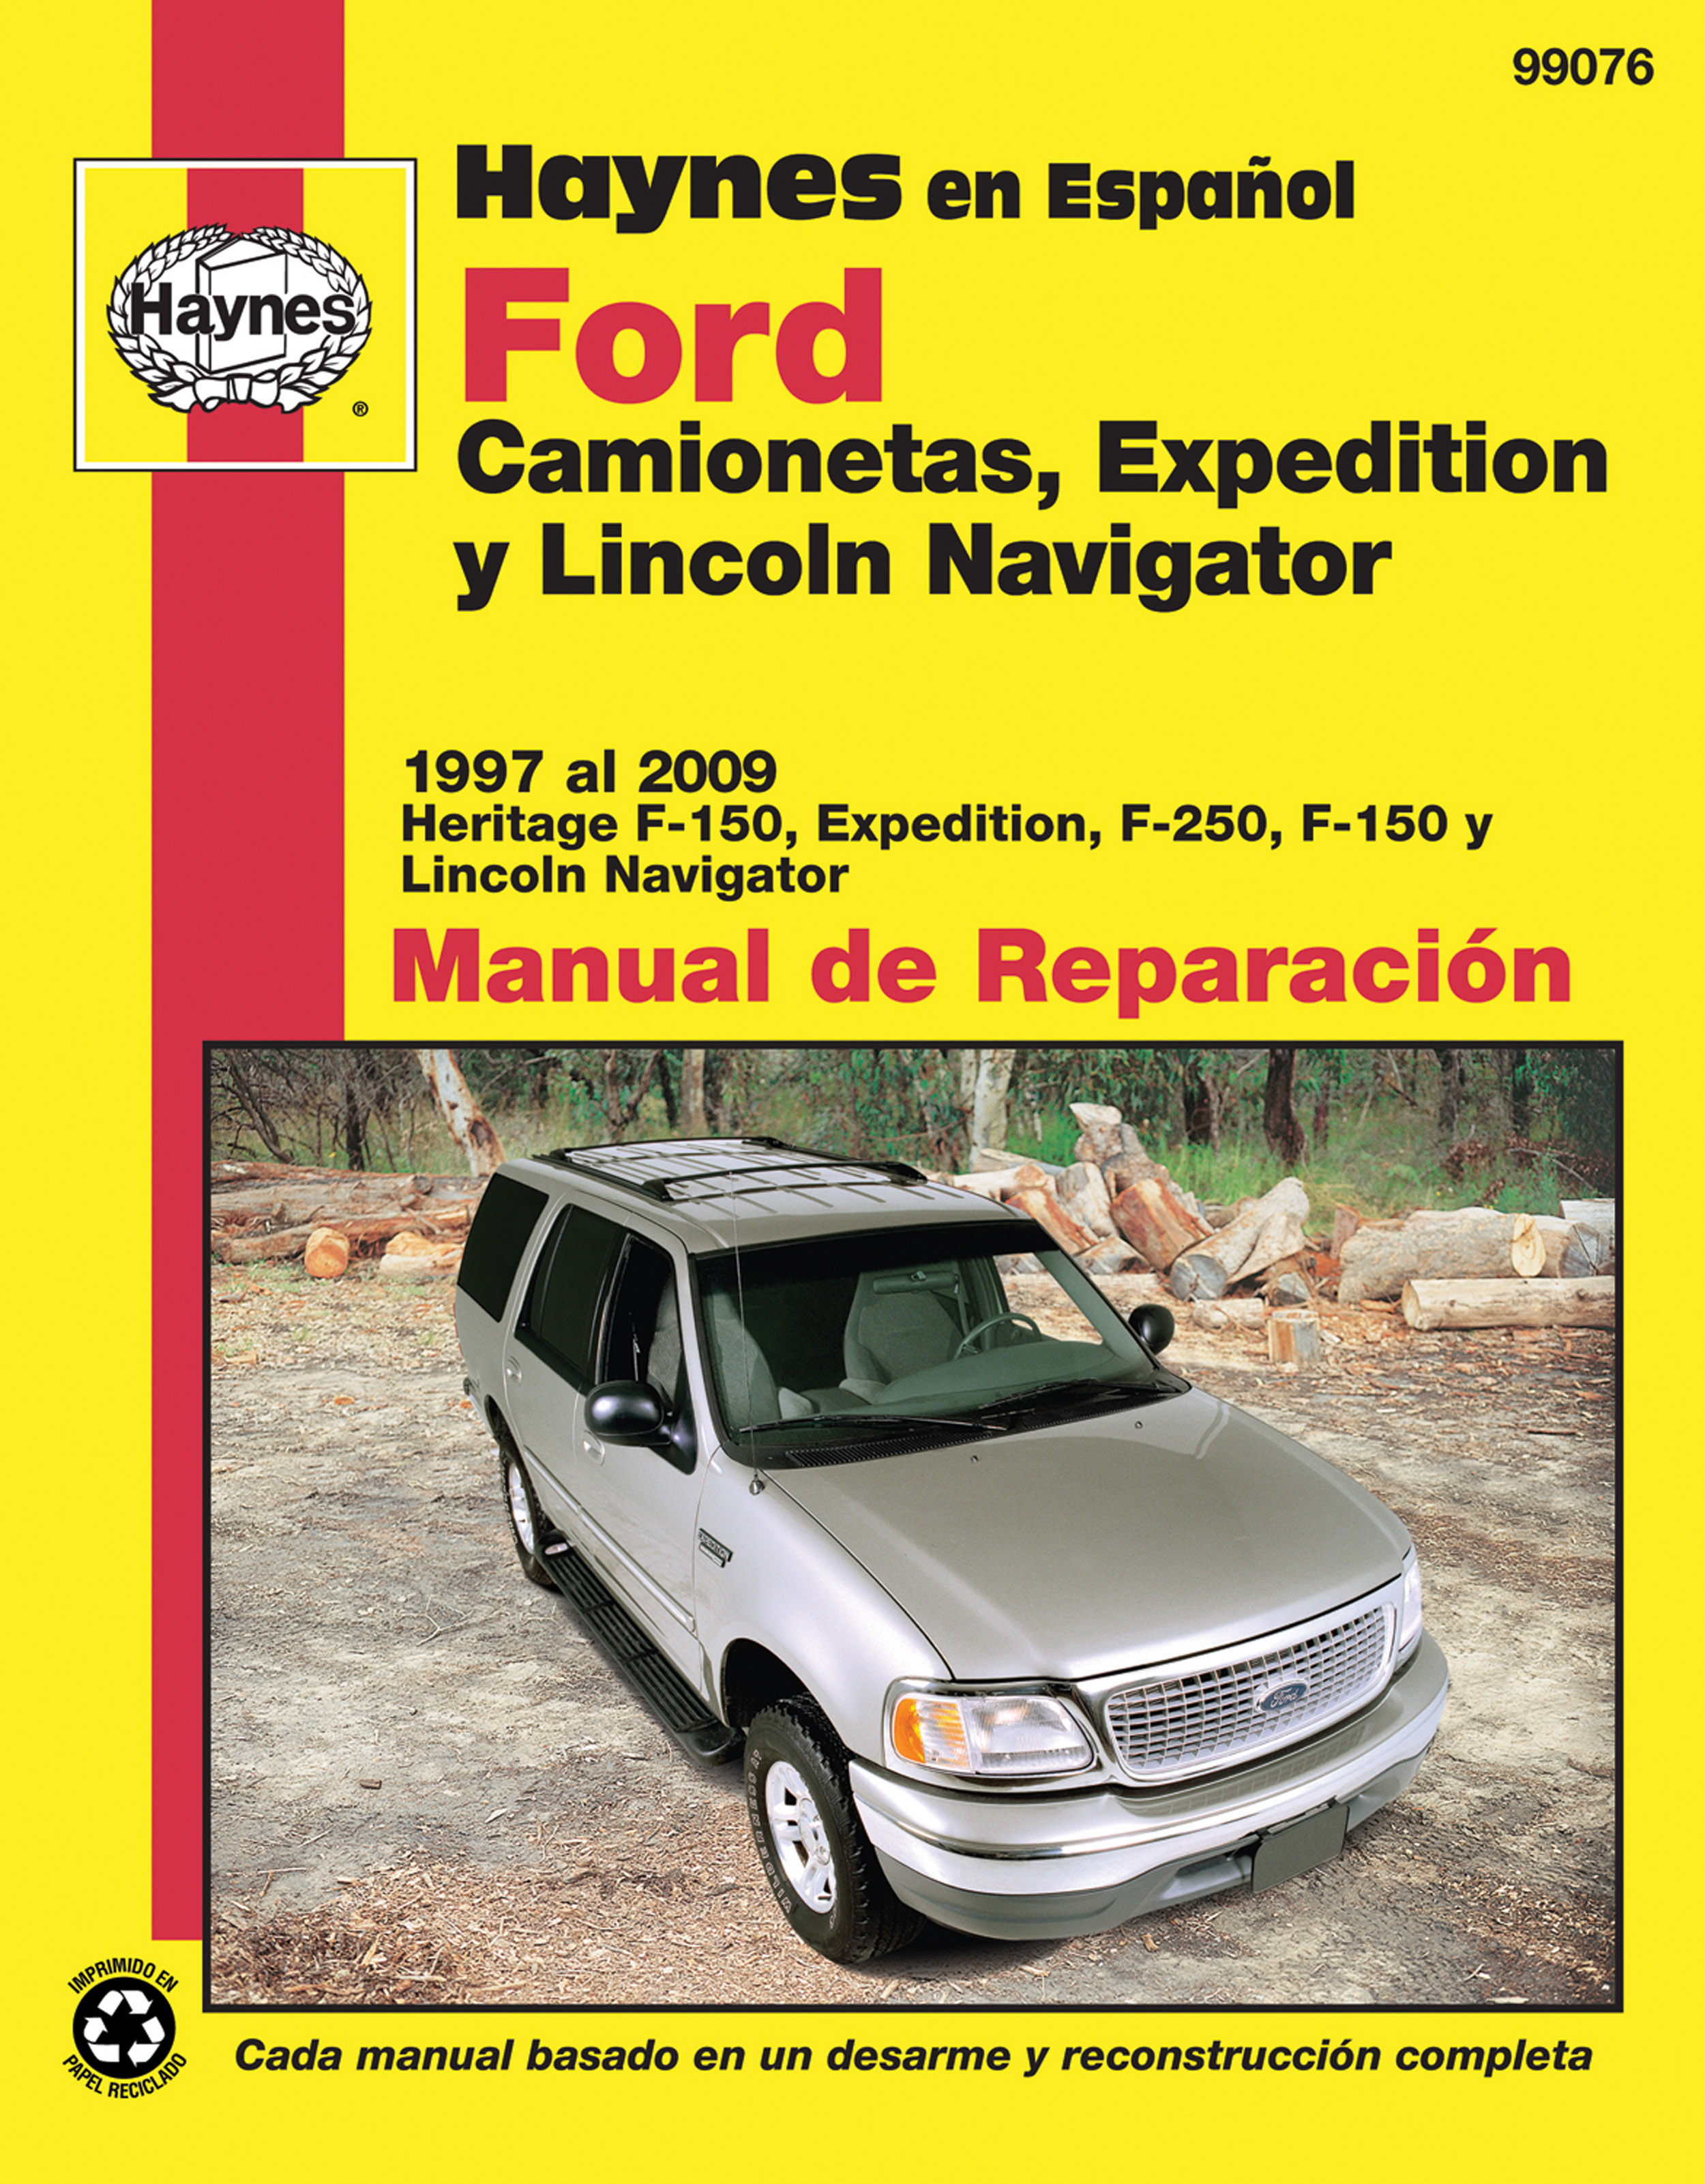 Ford Camionetas, Expedition y Lincoln Navigator Haynes Manual de